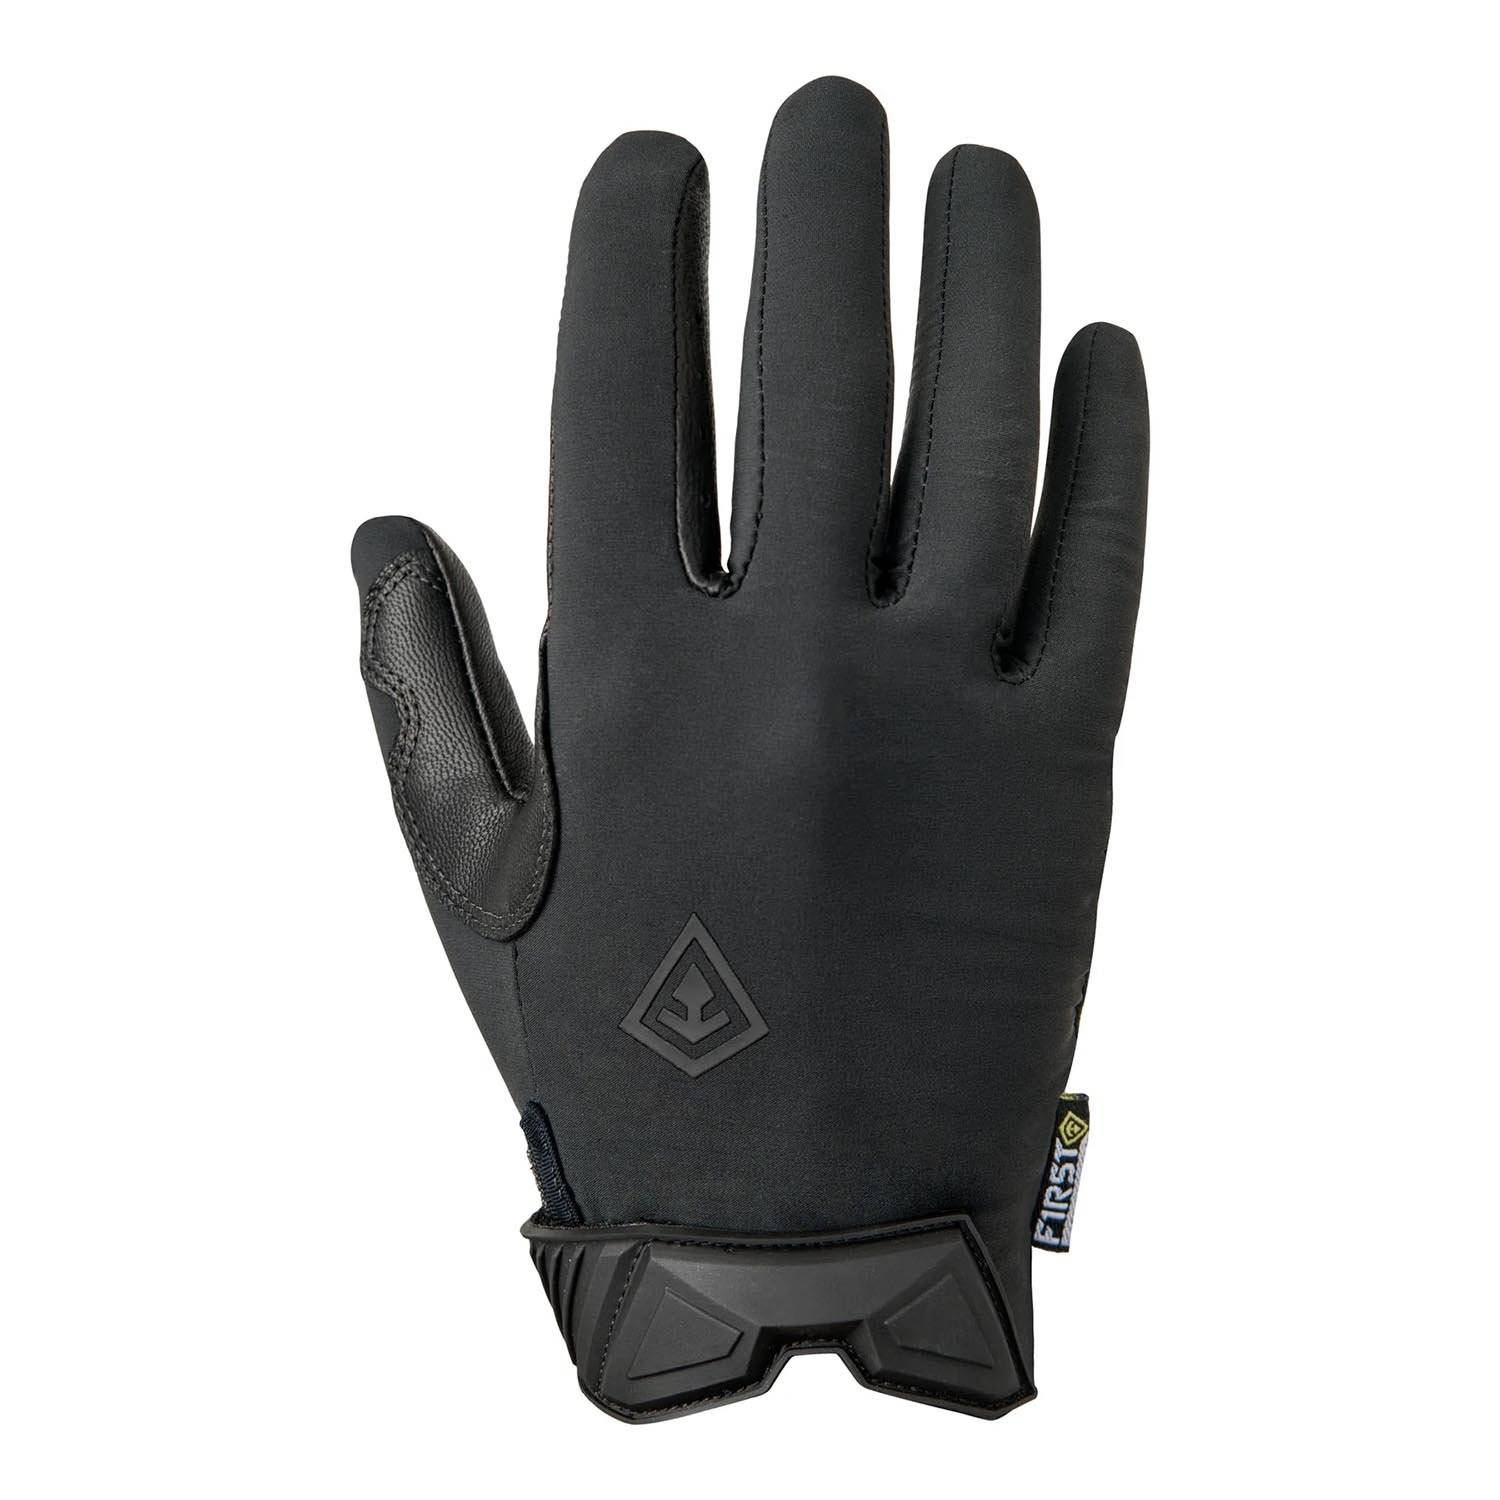 First Tactical Women's Lightweight Patrol Gloves